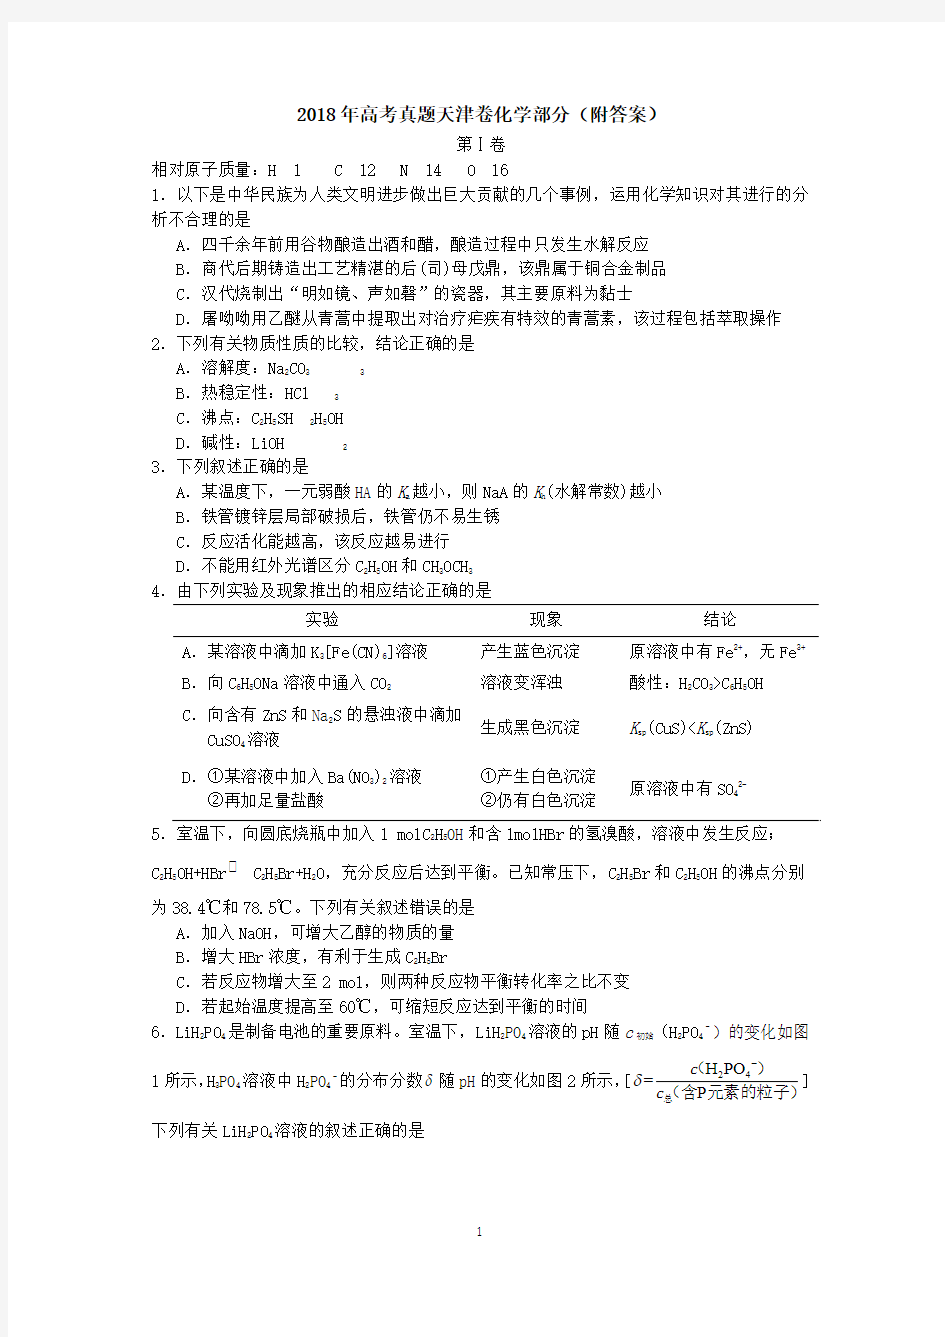 2018年高考真题天津卷化学部分(附答案)